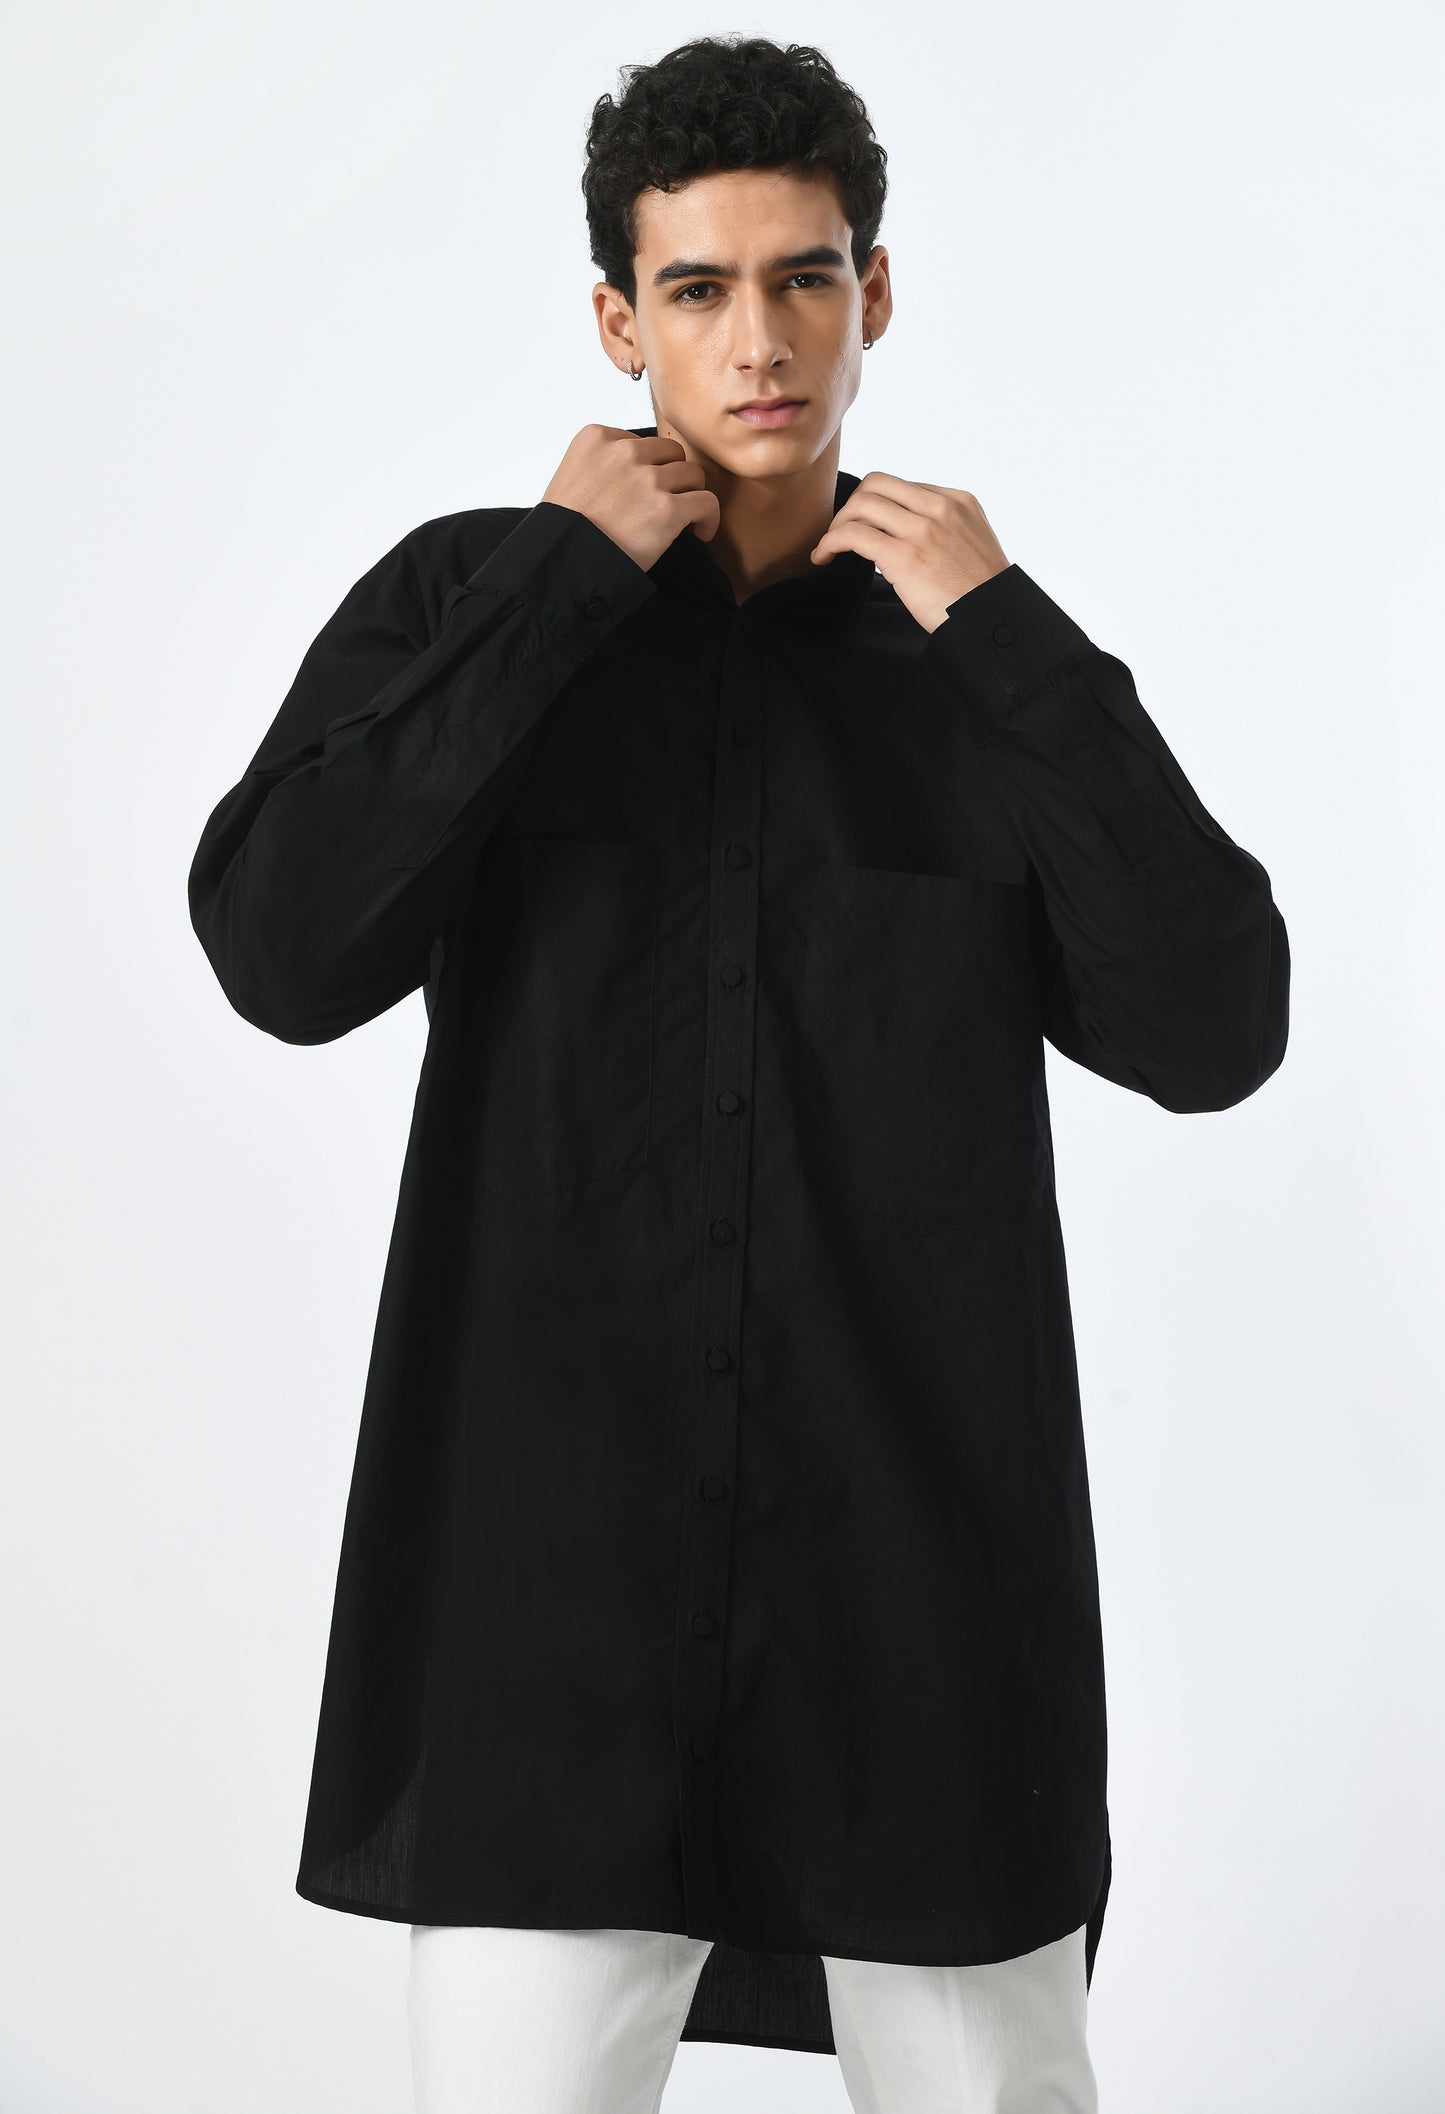 Black cotton unisex high-low cut shirt.